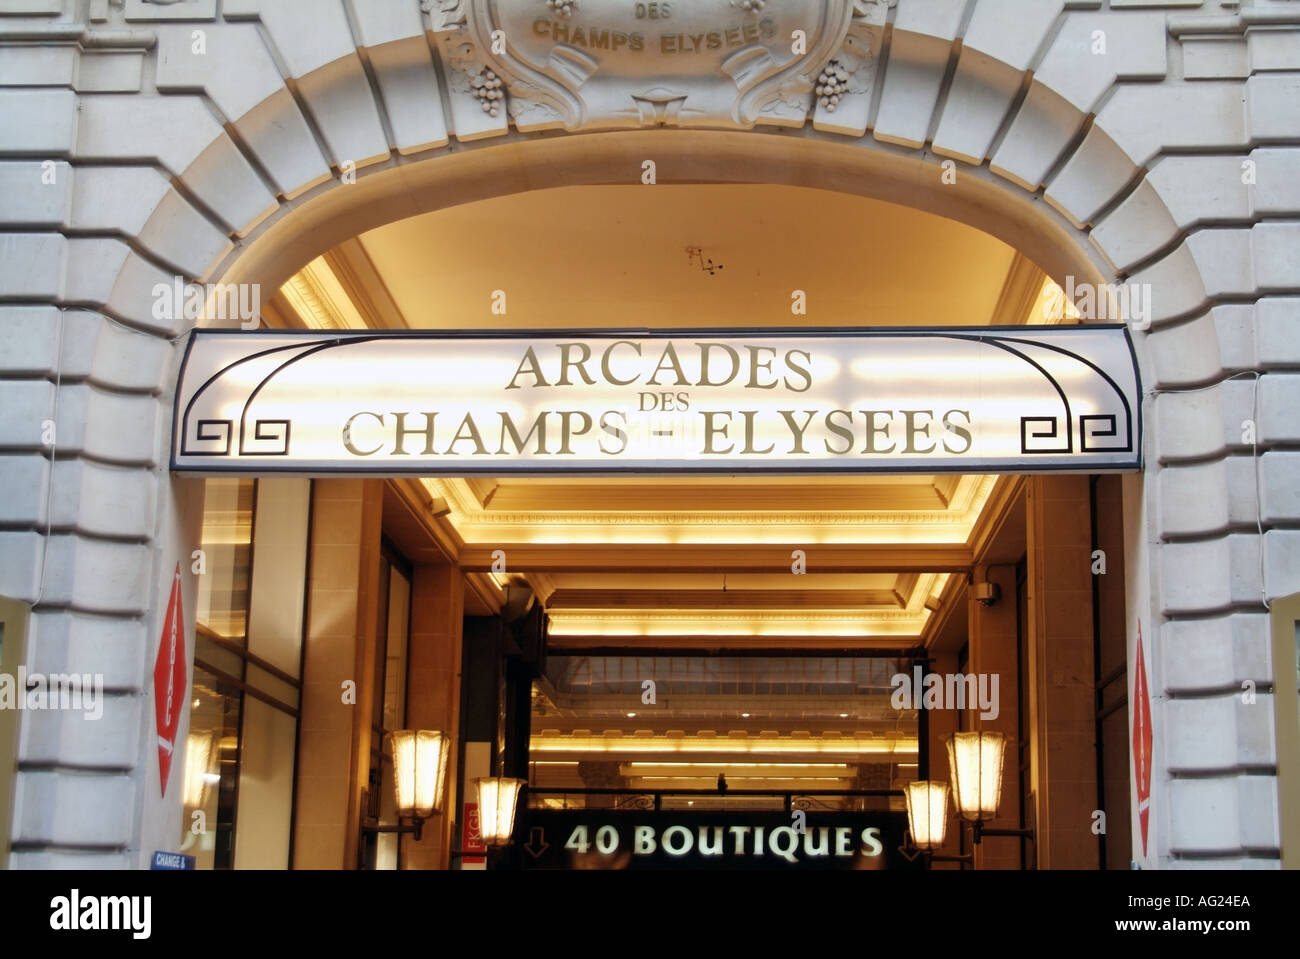 Champs Elysees segni oltre l'ingresso alla galleria commerciale coperta direttamente fuori dalla strada principale che conduce a 40 boutique Foto Stock